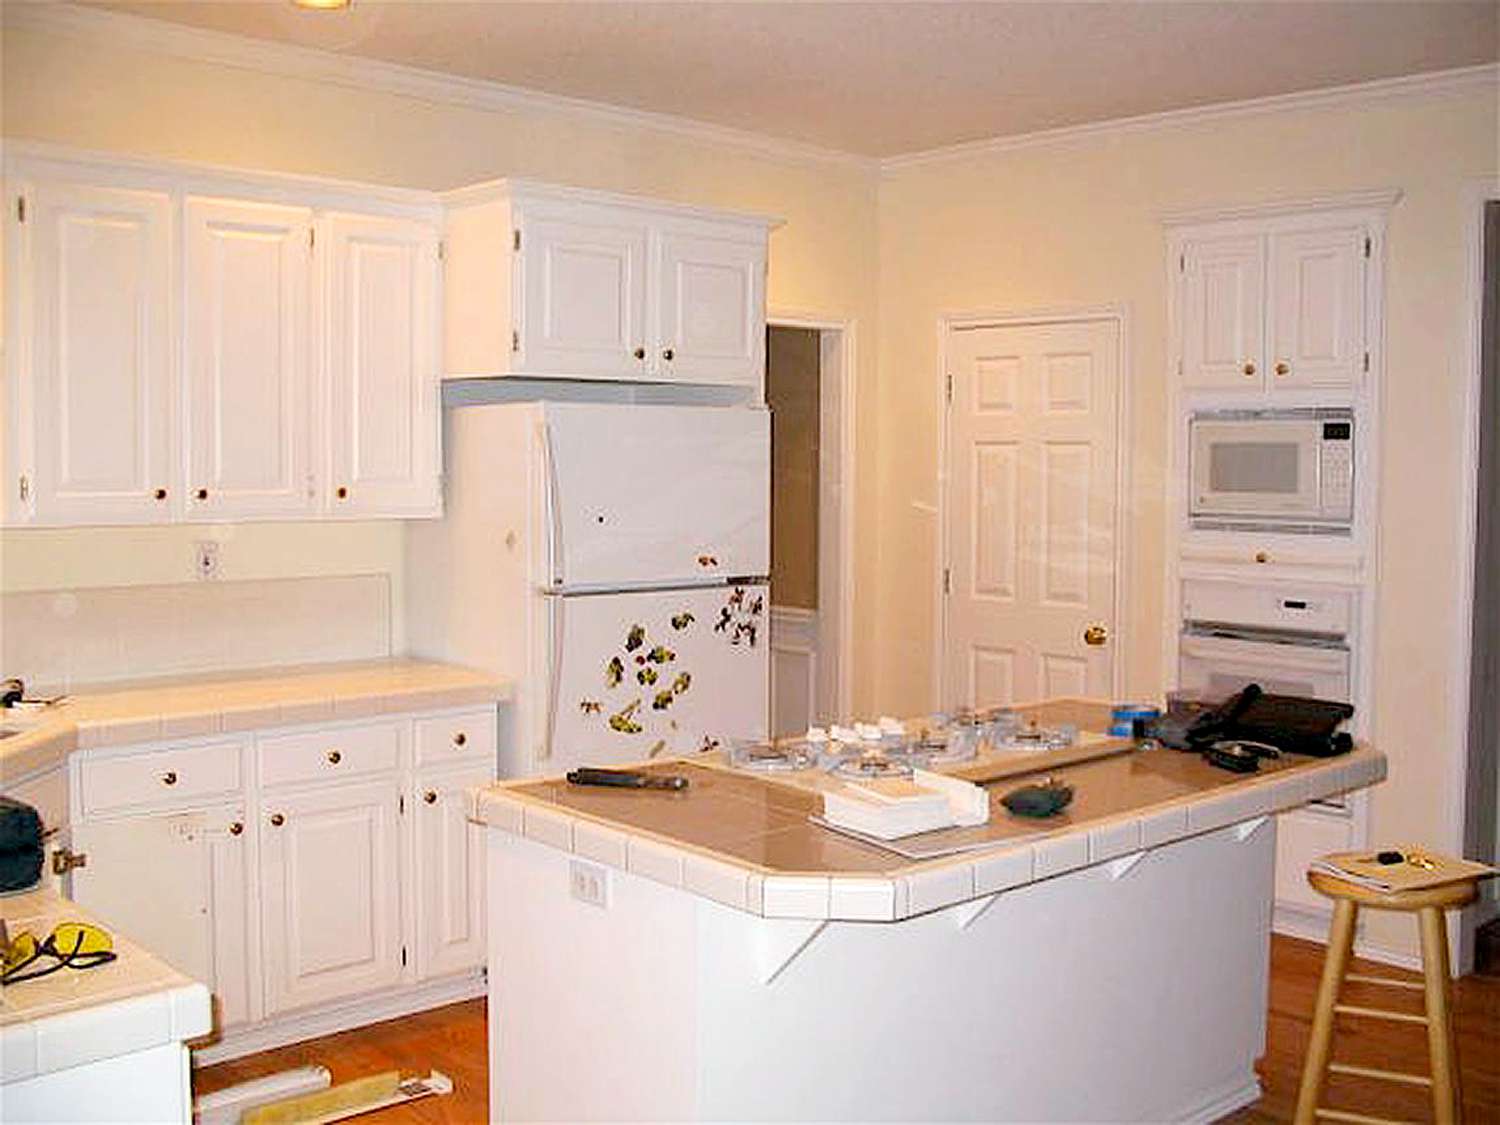 Interior of white kitchen at home